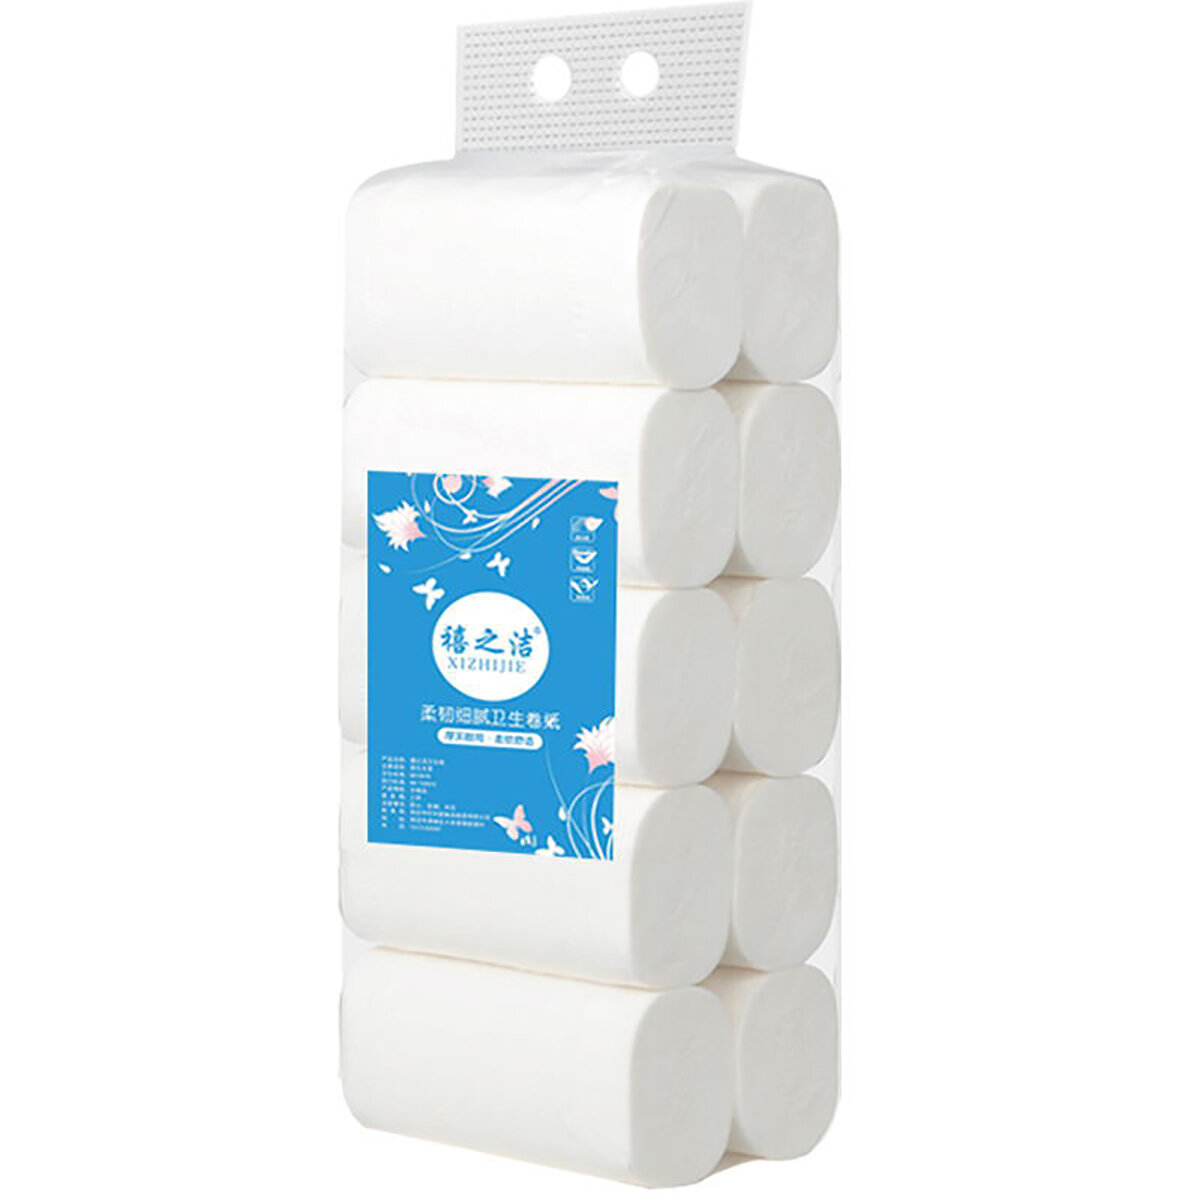 10 rolek 4 warstwy Soft Papier toaletowy z miazgi drzewnej Podróż w gospodarstwie domowym Silne wchłanianie wody Szybko rozpuszczające się pudełko z papierem toaletowym